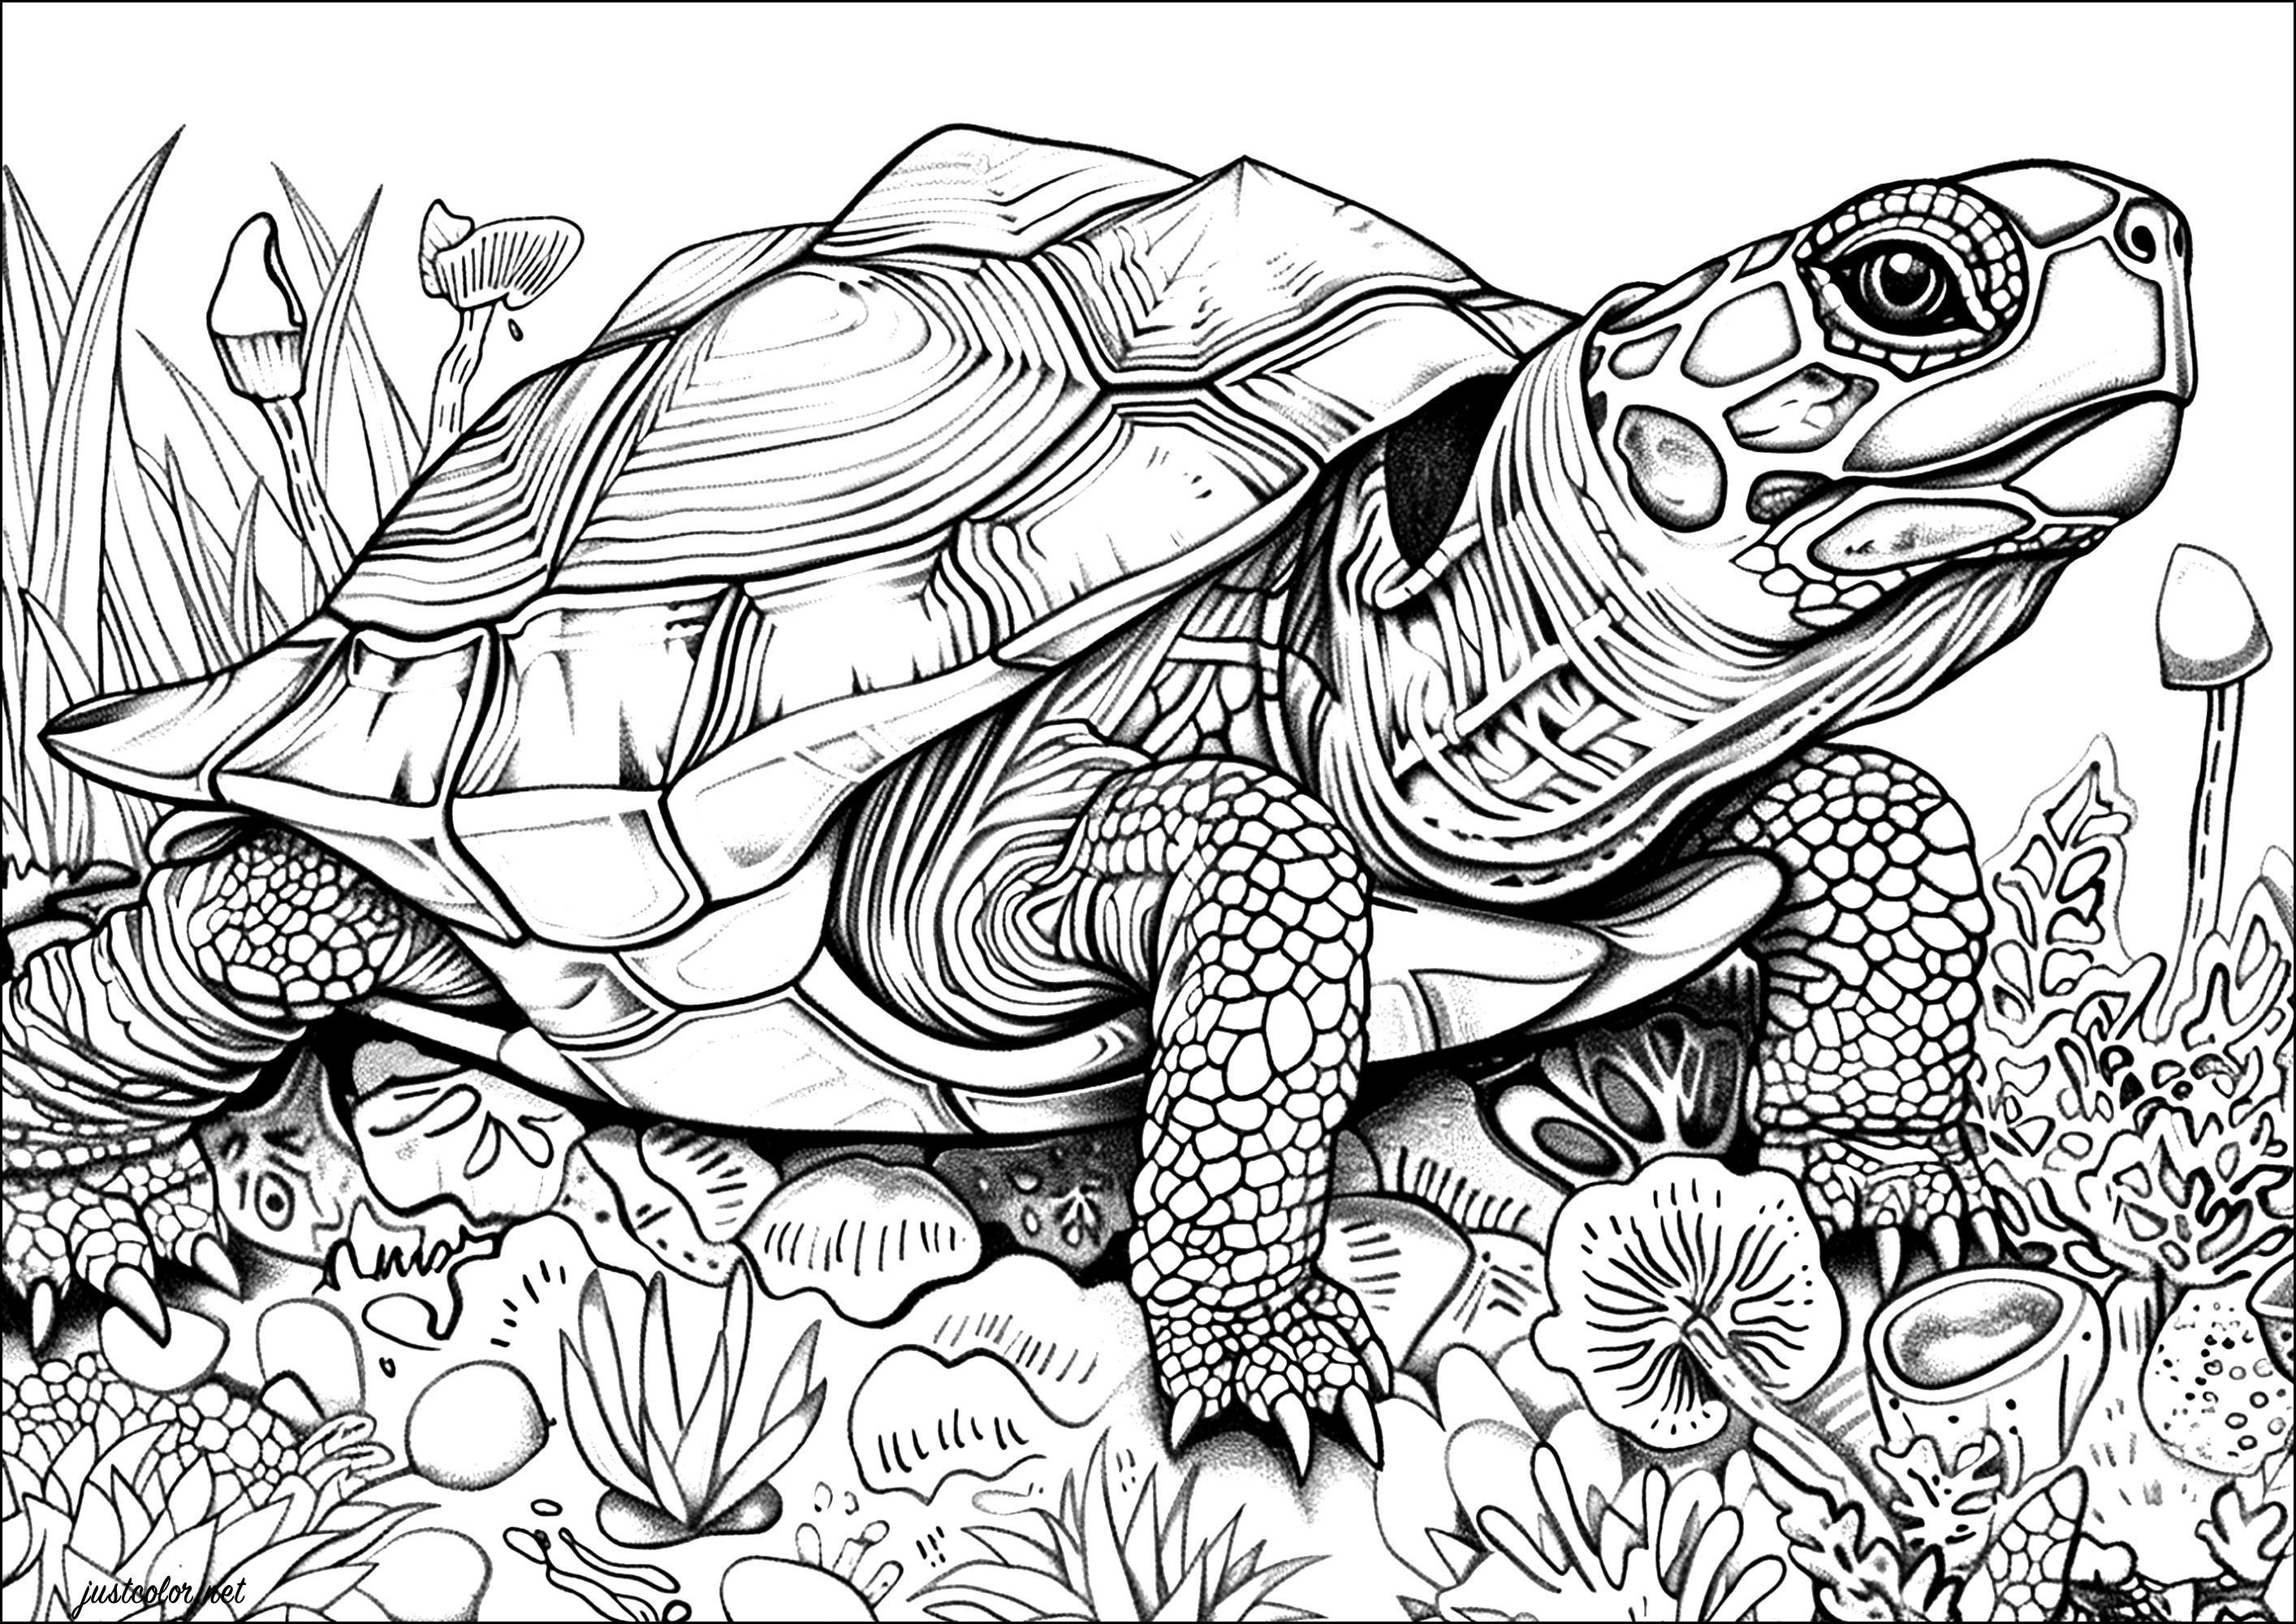 Página para colorear de tortugas realistas con muchos detalles para colorear. Las escamas del caparazón de esta tortuga están meticulosamente representadas, dando la impresión de poder tocarlas con la punta de los dedos.Coge tus lápices de colores o rotuladores y déjate llevar por la belleza de esta majestuosa tortuga.